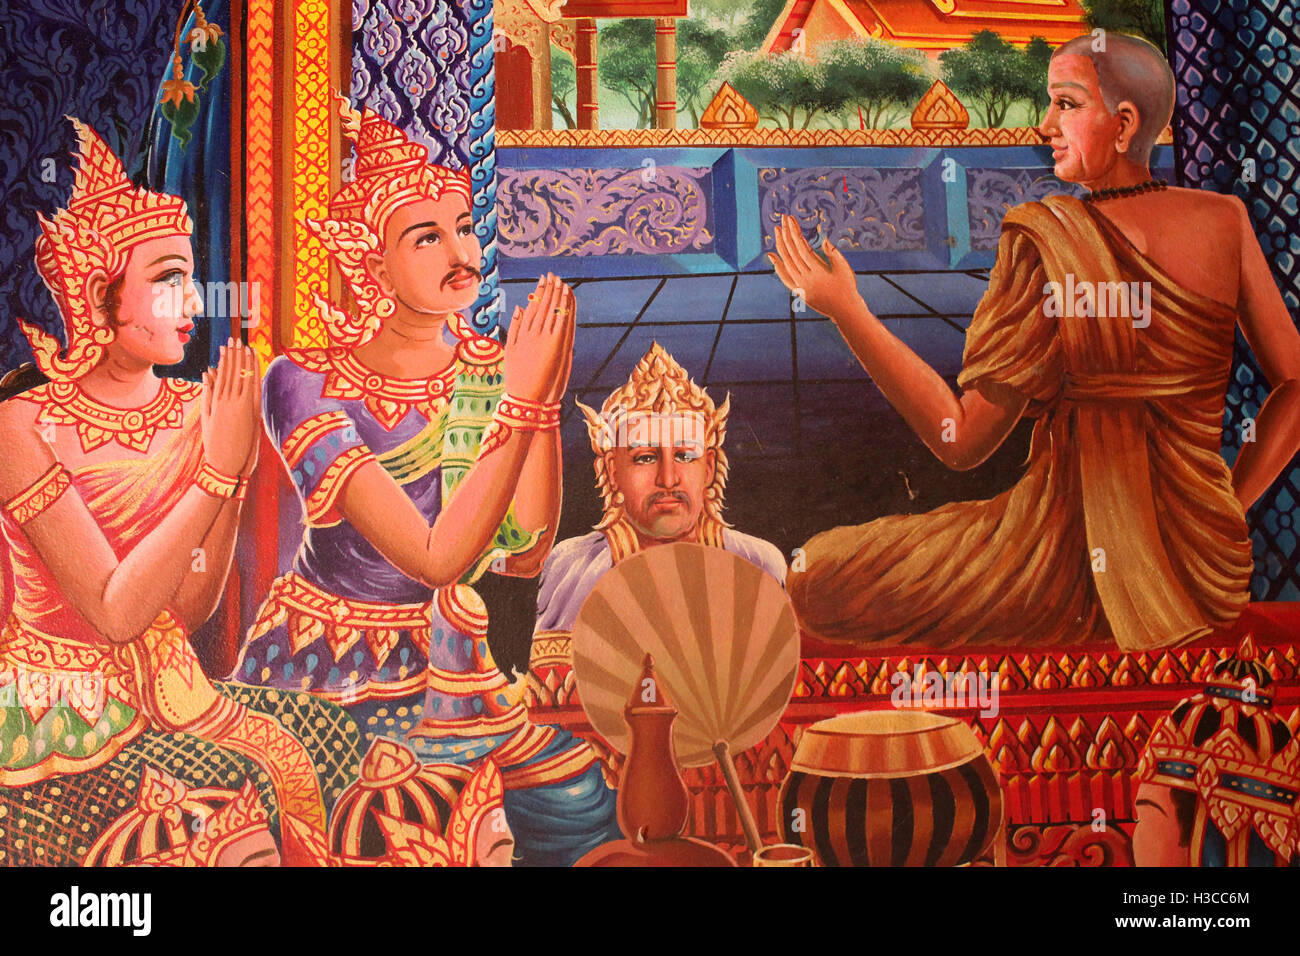 Teil des Wandbildes Darstellung der Geschichte von wie Wat Phra Doi Suthep Tempel begann Stockfoto